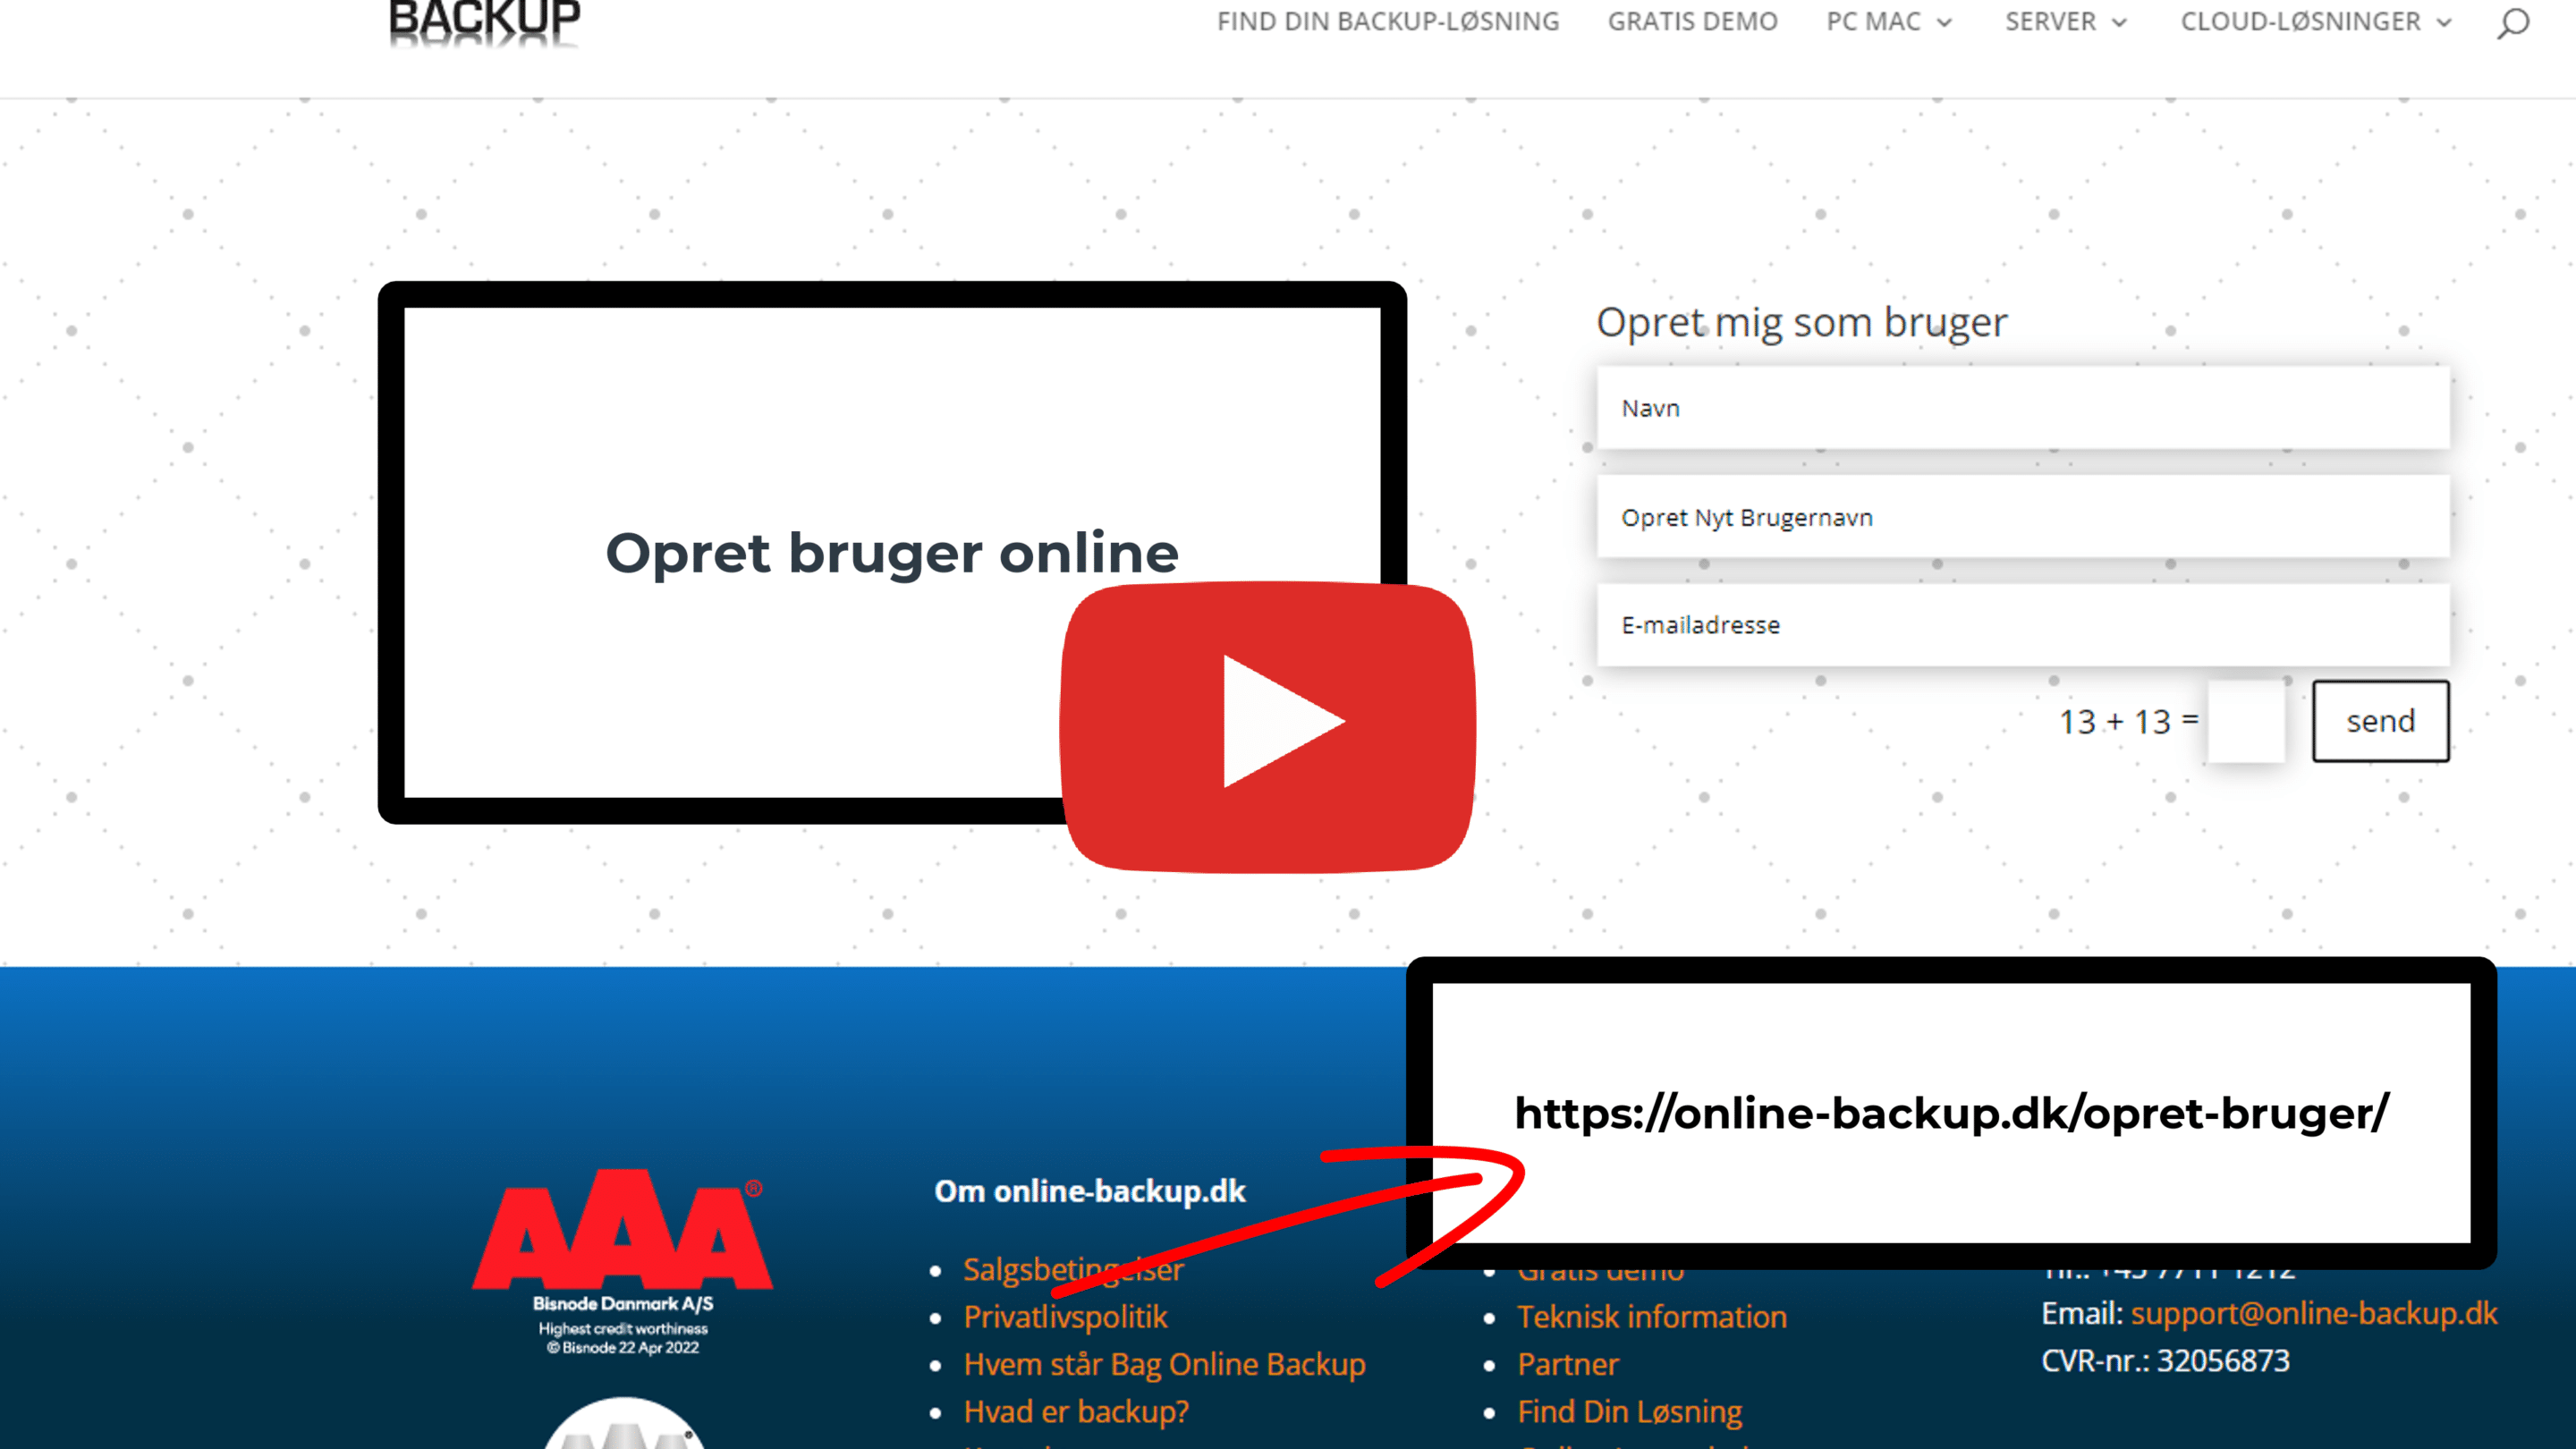 Opret-Dig-som-bruger.Online-Backup.dk